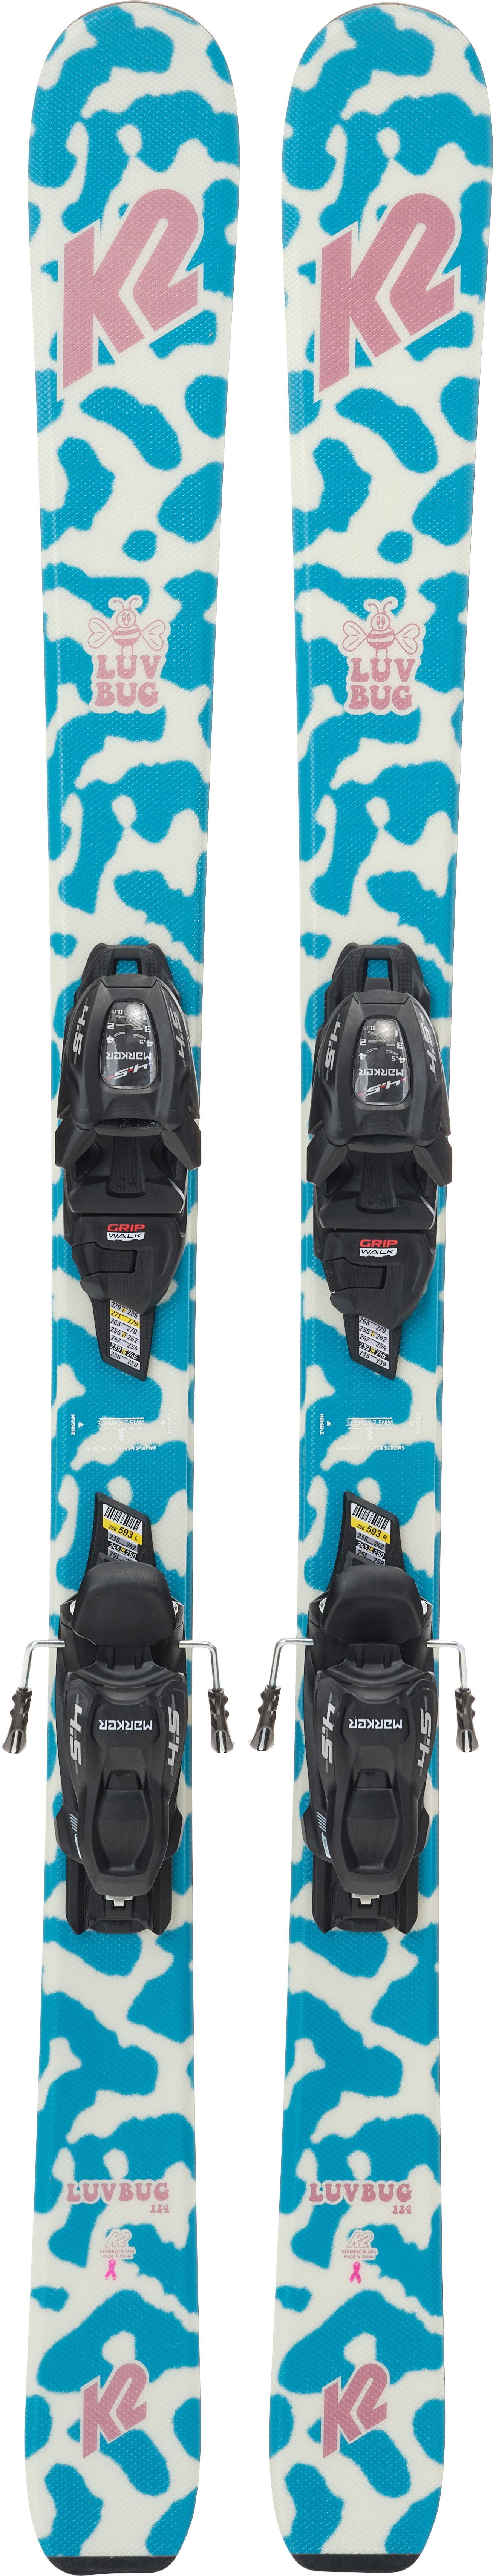 K2 Luv Bug Fdt 4.5 Skier inkl. Bindungen, 112 cm von K2